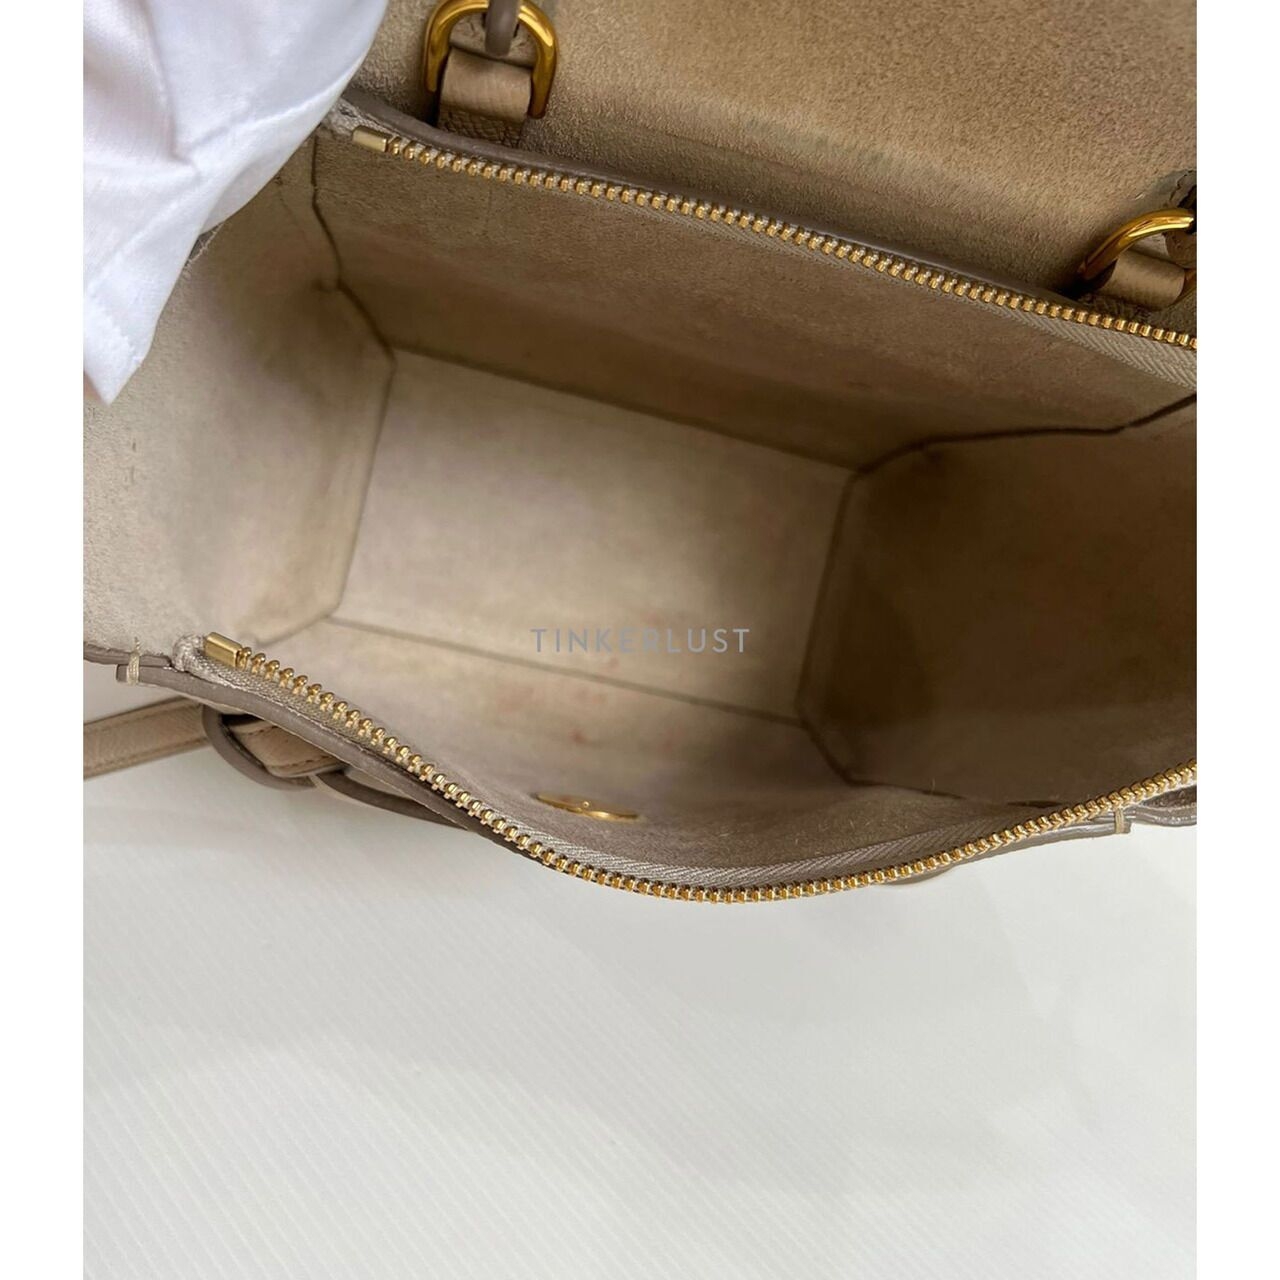 Celine Nano Belt Bag Beige 2019 GHW Sling Bag